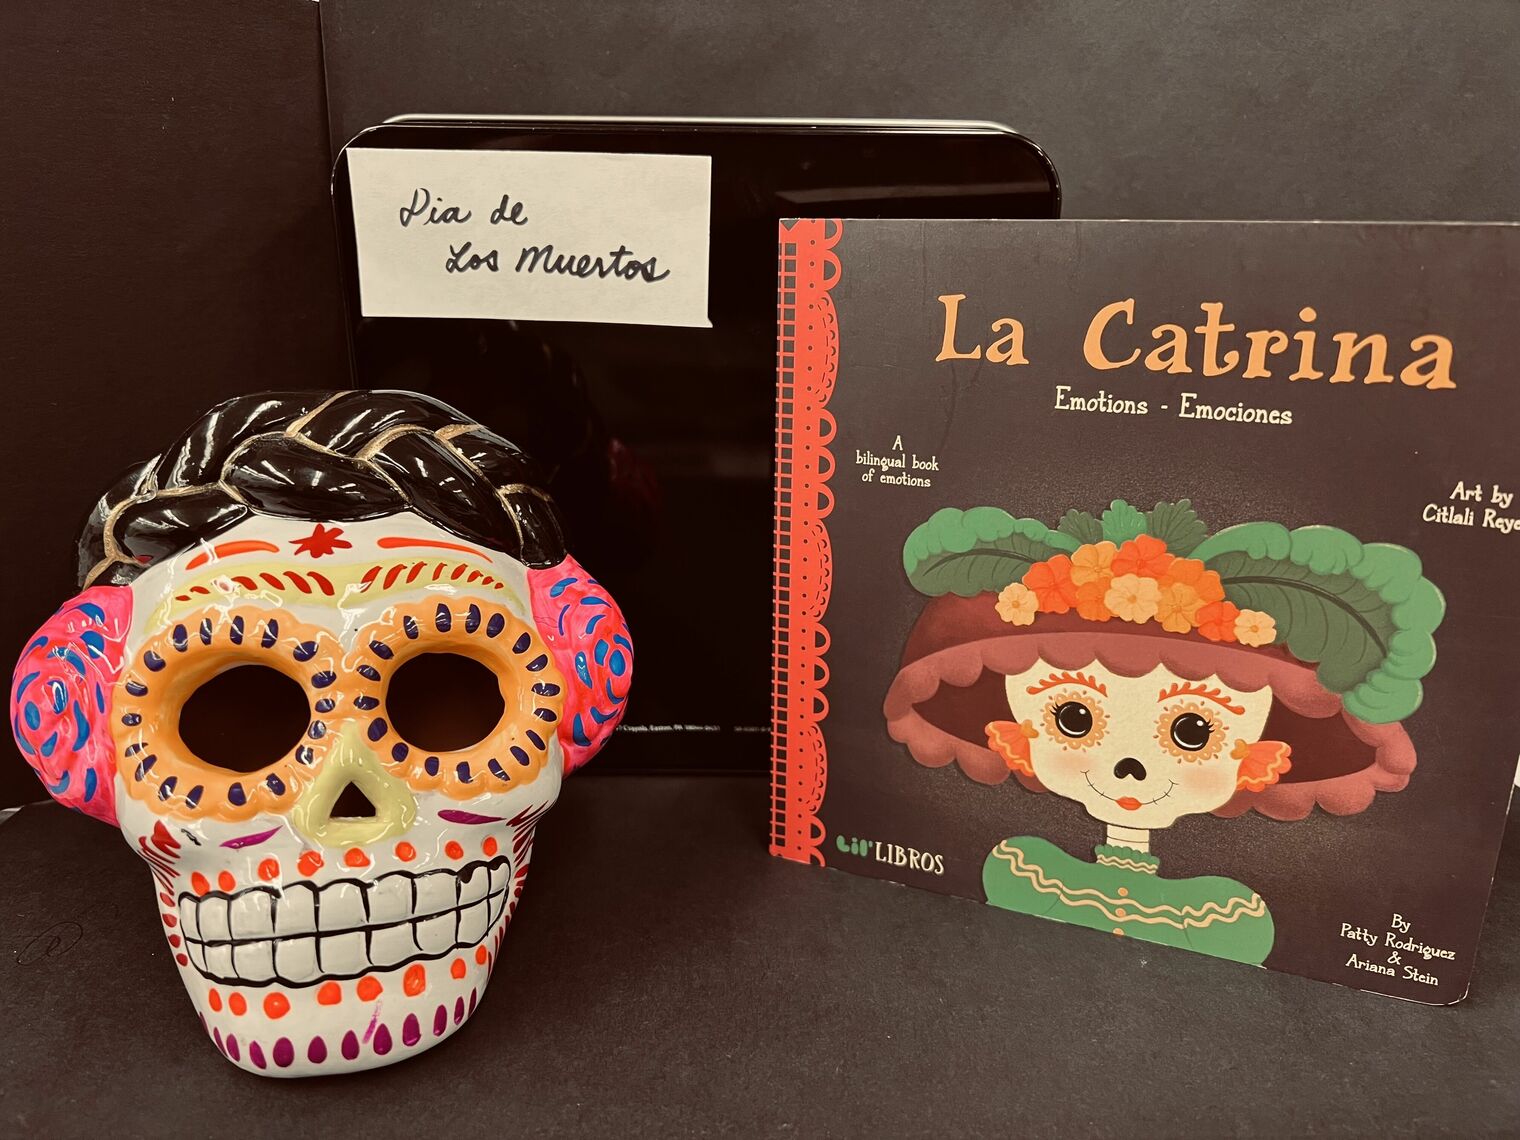 Book and a Catrina to celebrate Dia de Los Muertos